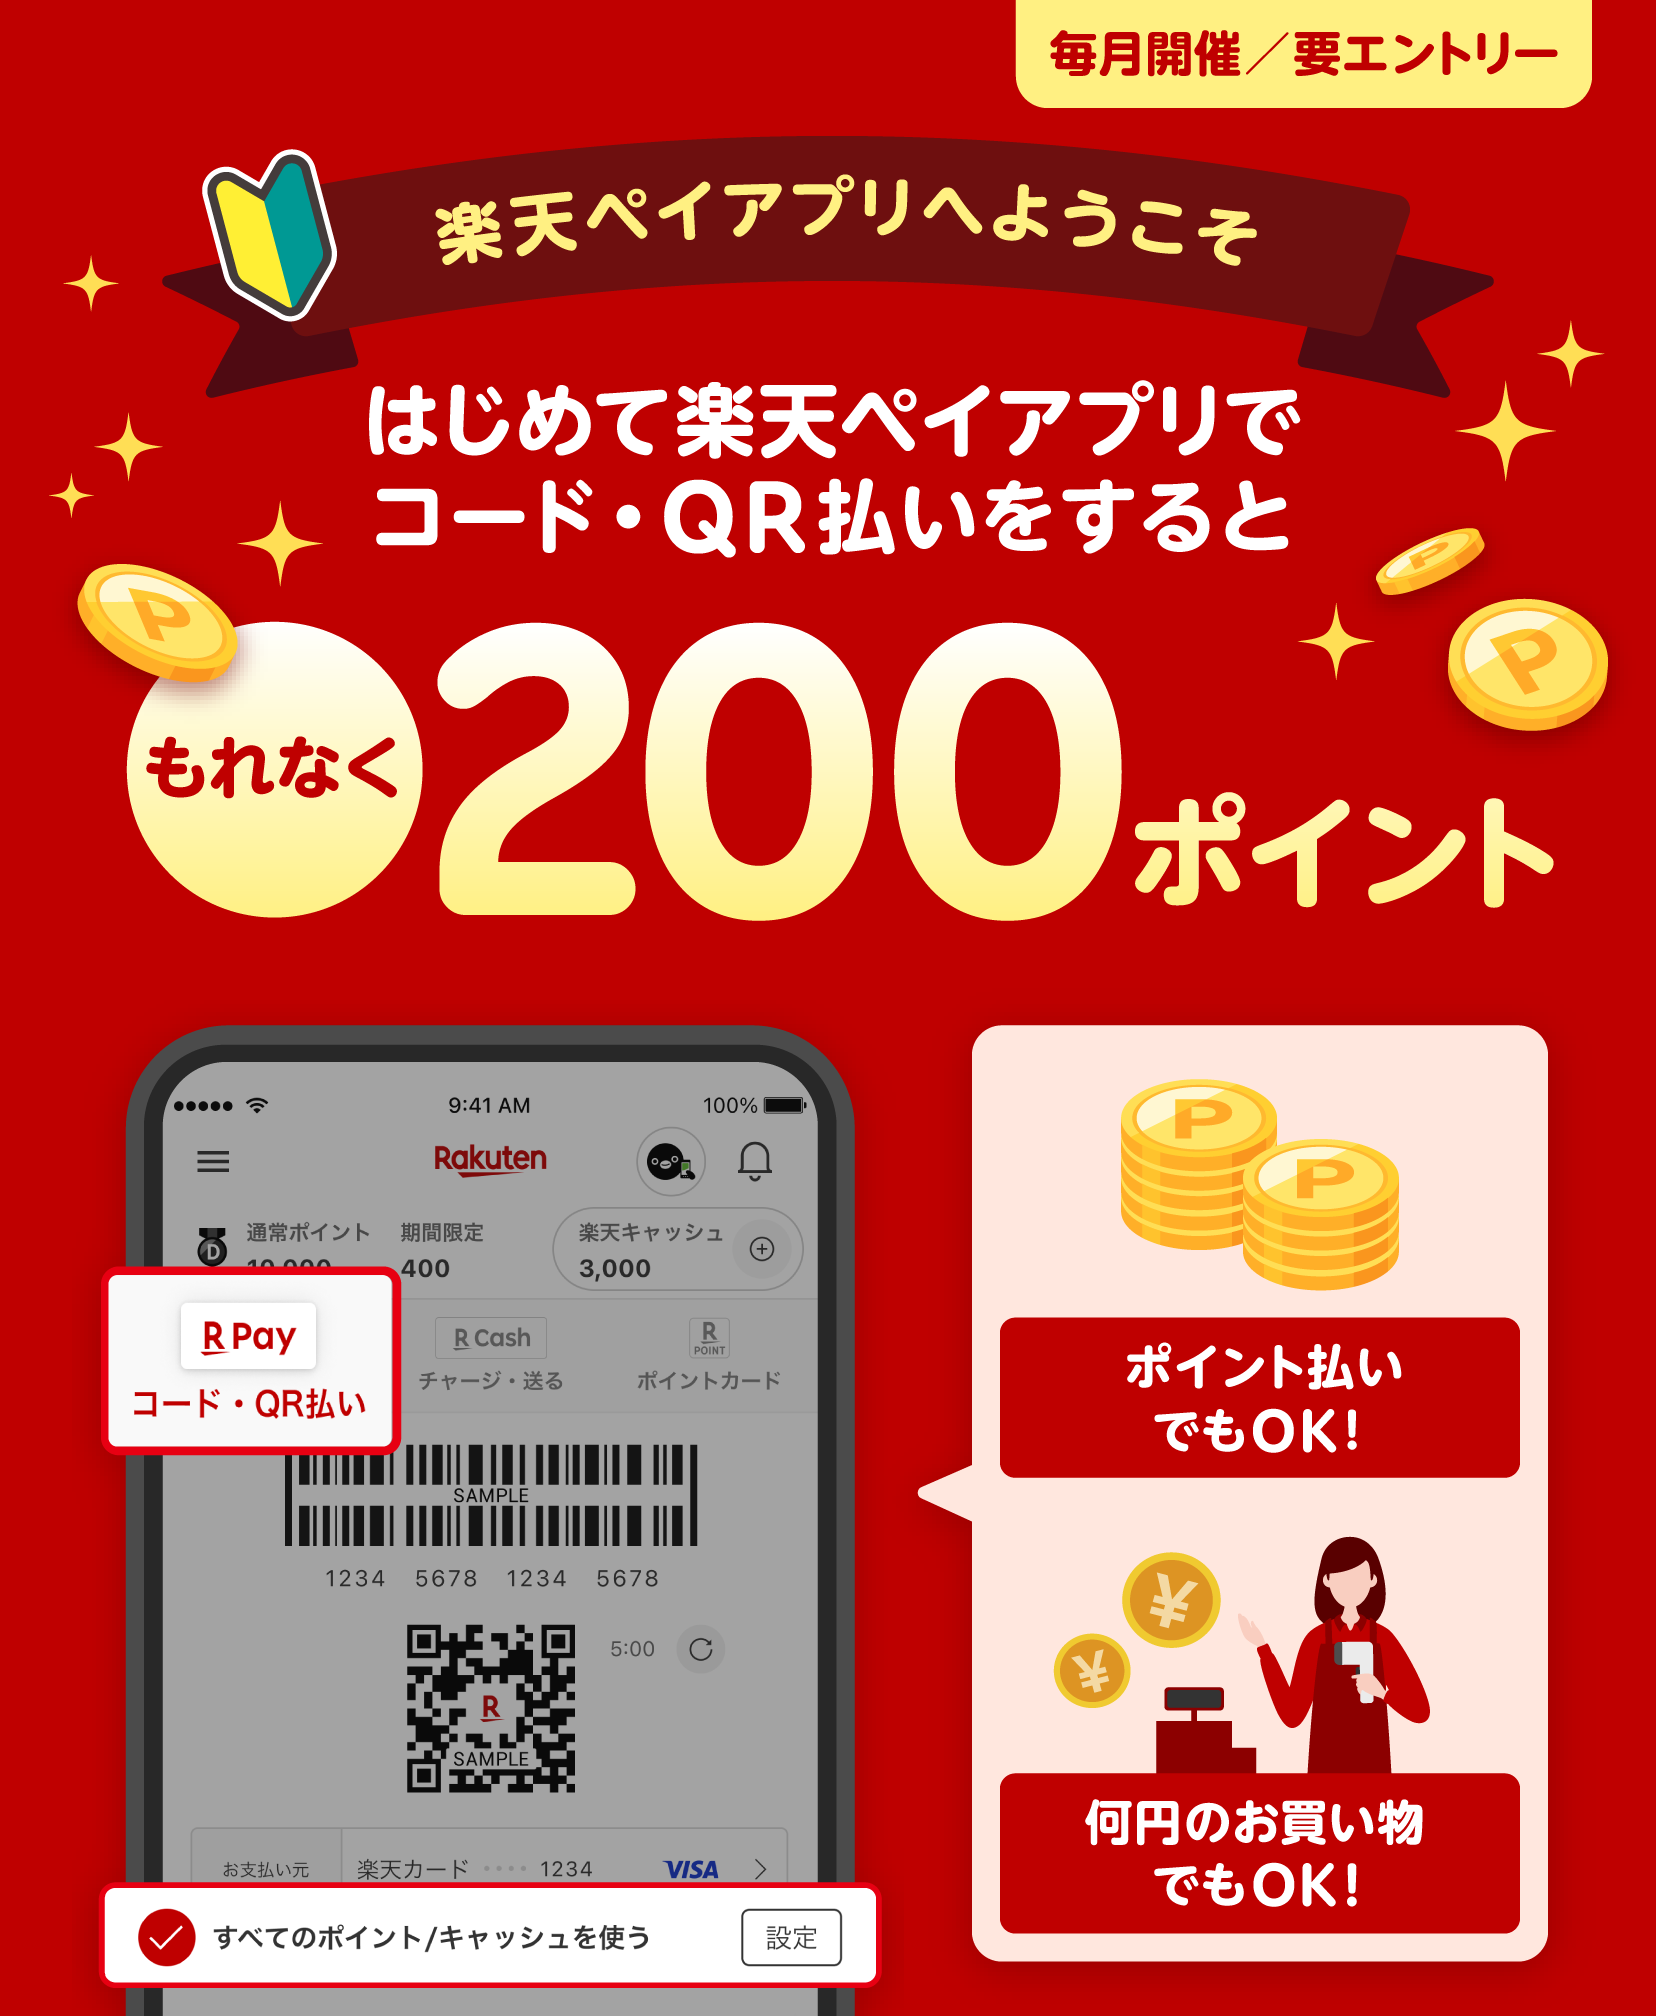 【毎月開催・要エントリー】楽天ペイアプリへようこそ　はじめて楽天ペイアプリでコード・QR払いをするともれなく200ポイント　ポイント払いでもOK！　何円のお買い物でもOK！